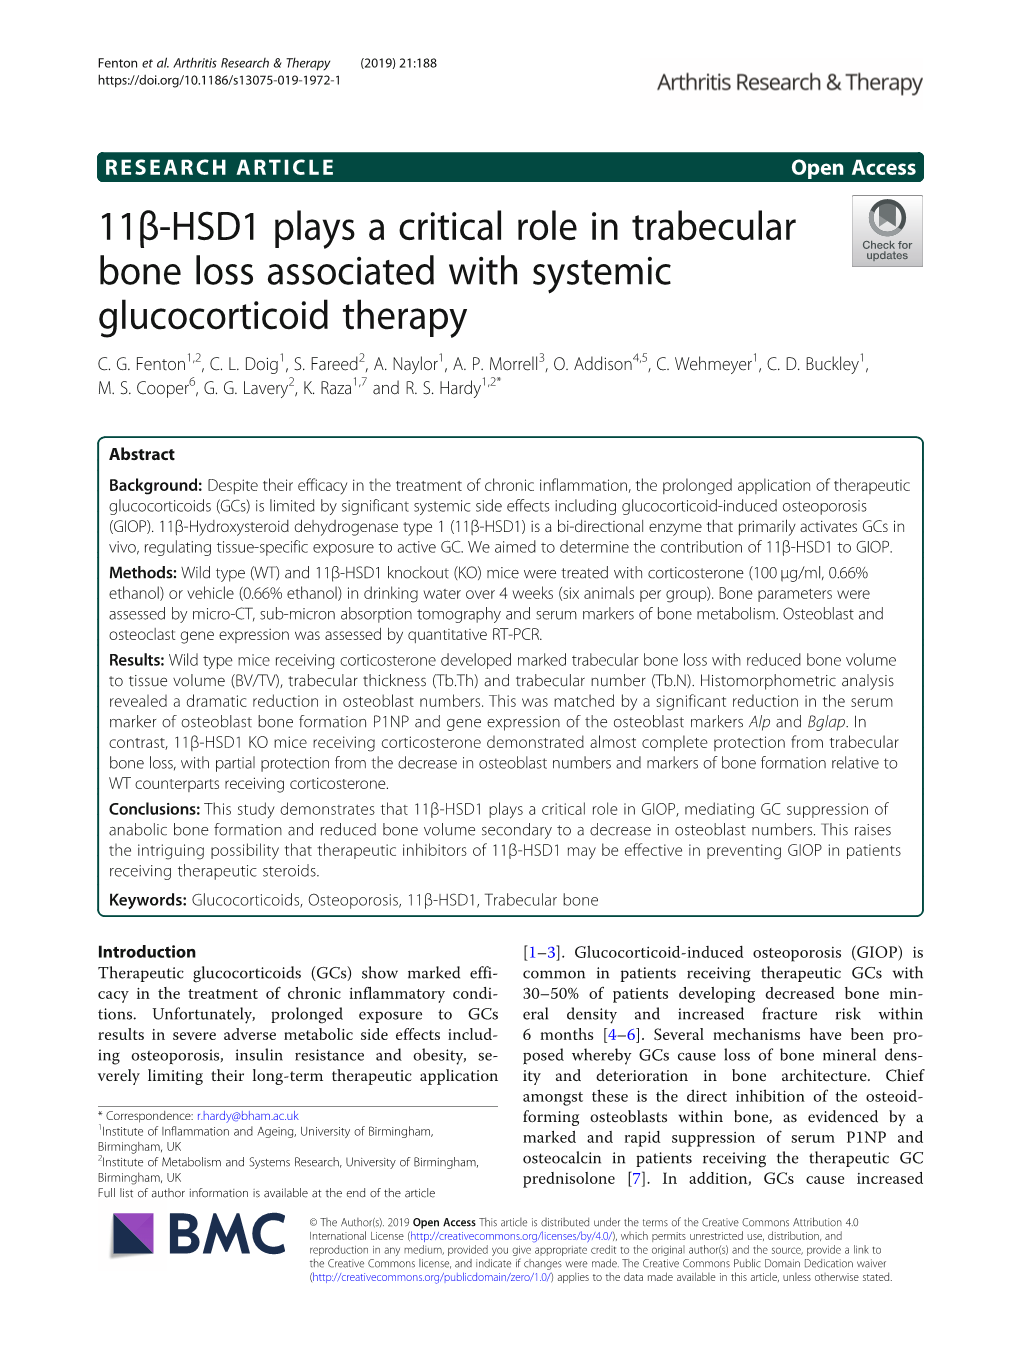 11Β-HSD1 Plays a Critical Role in Trabecular Bone Loss Associated with Systemic Glucocorticoid Therapy C